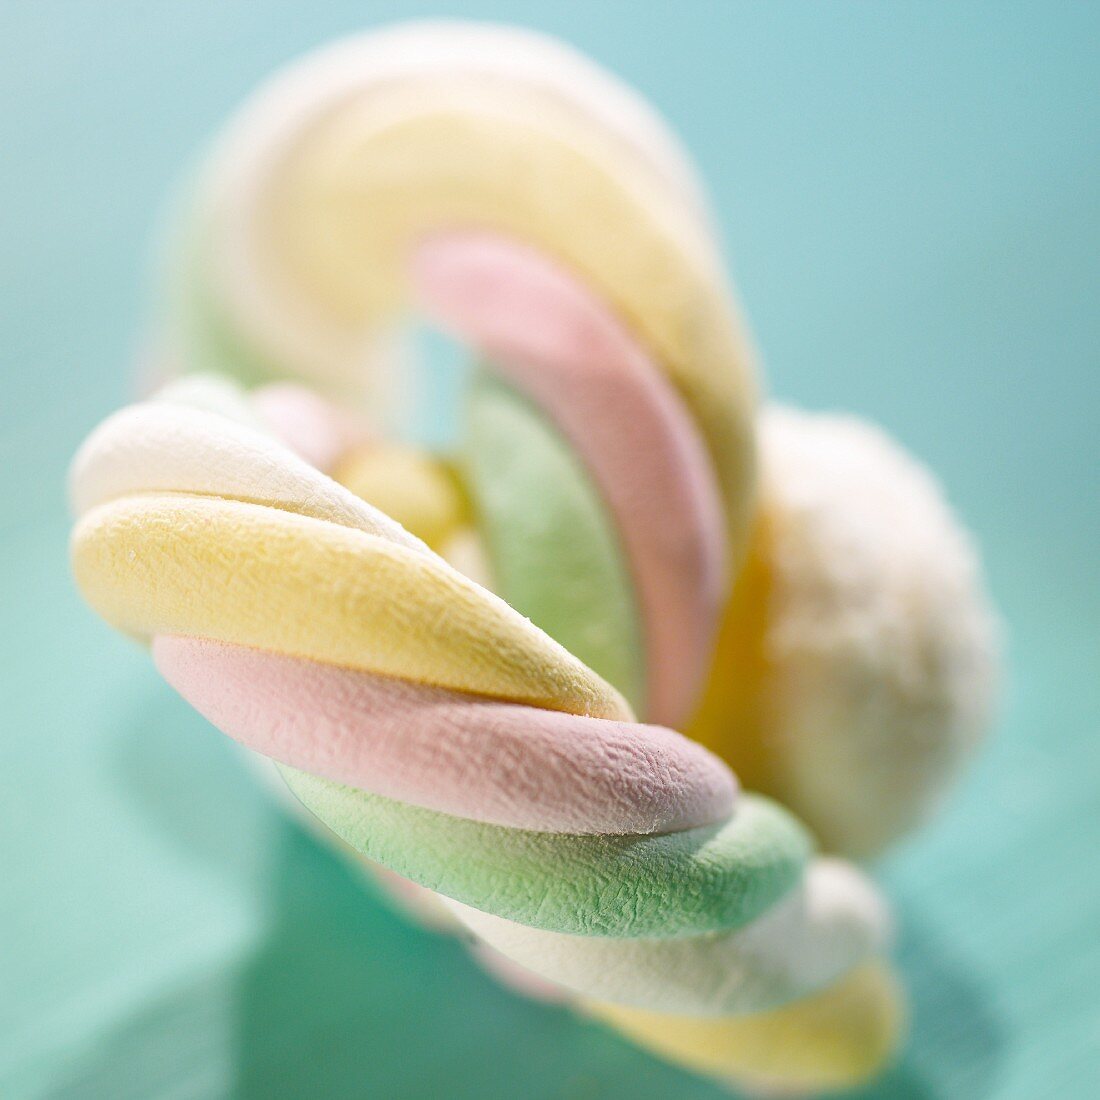 Multicolored marshmallows